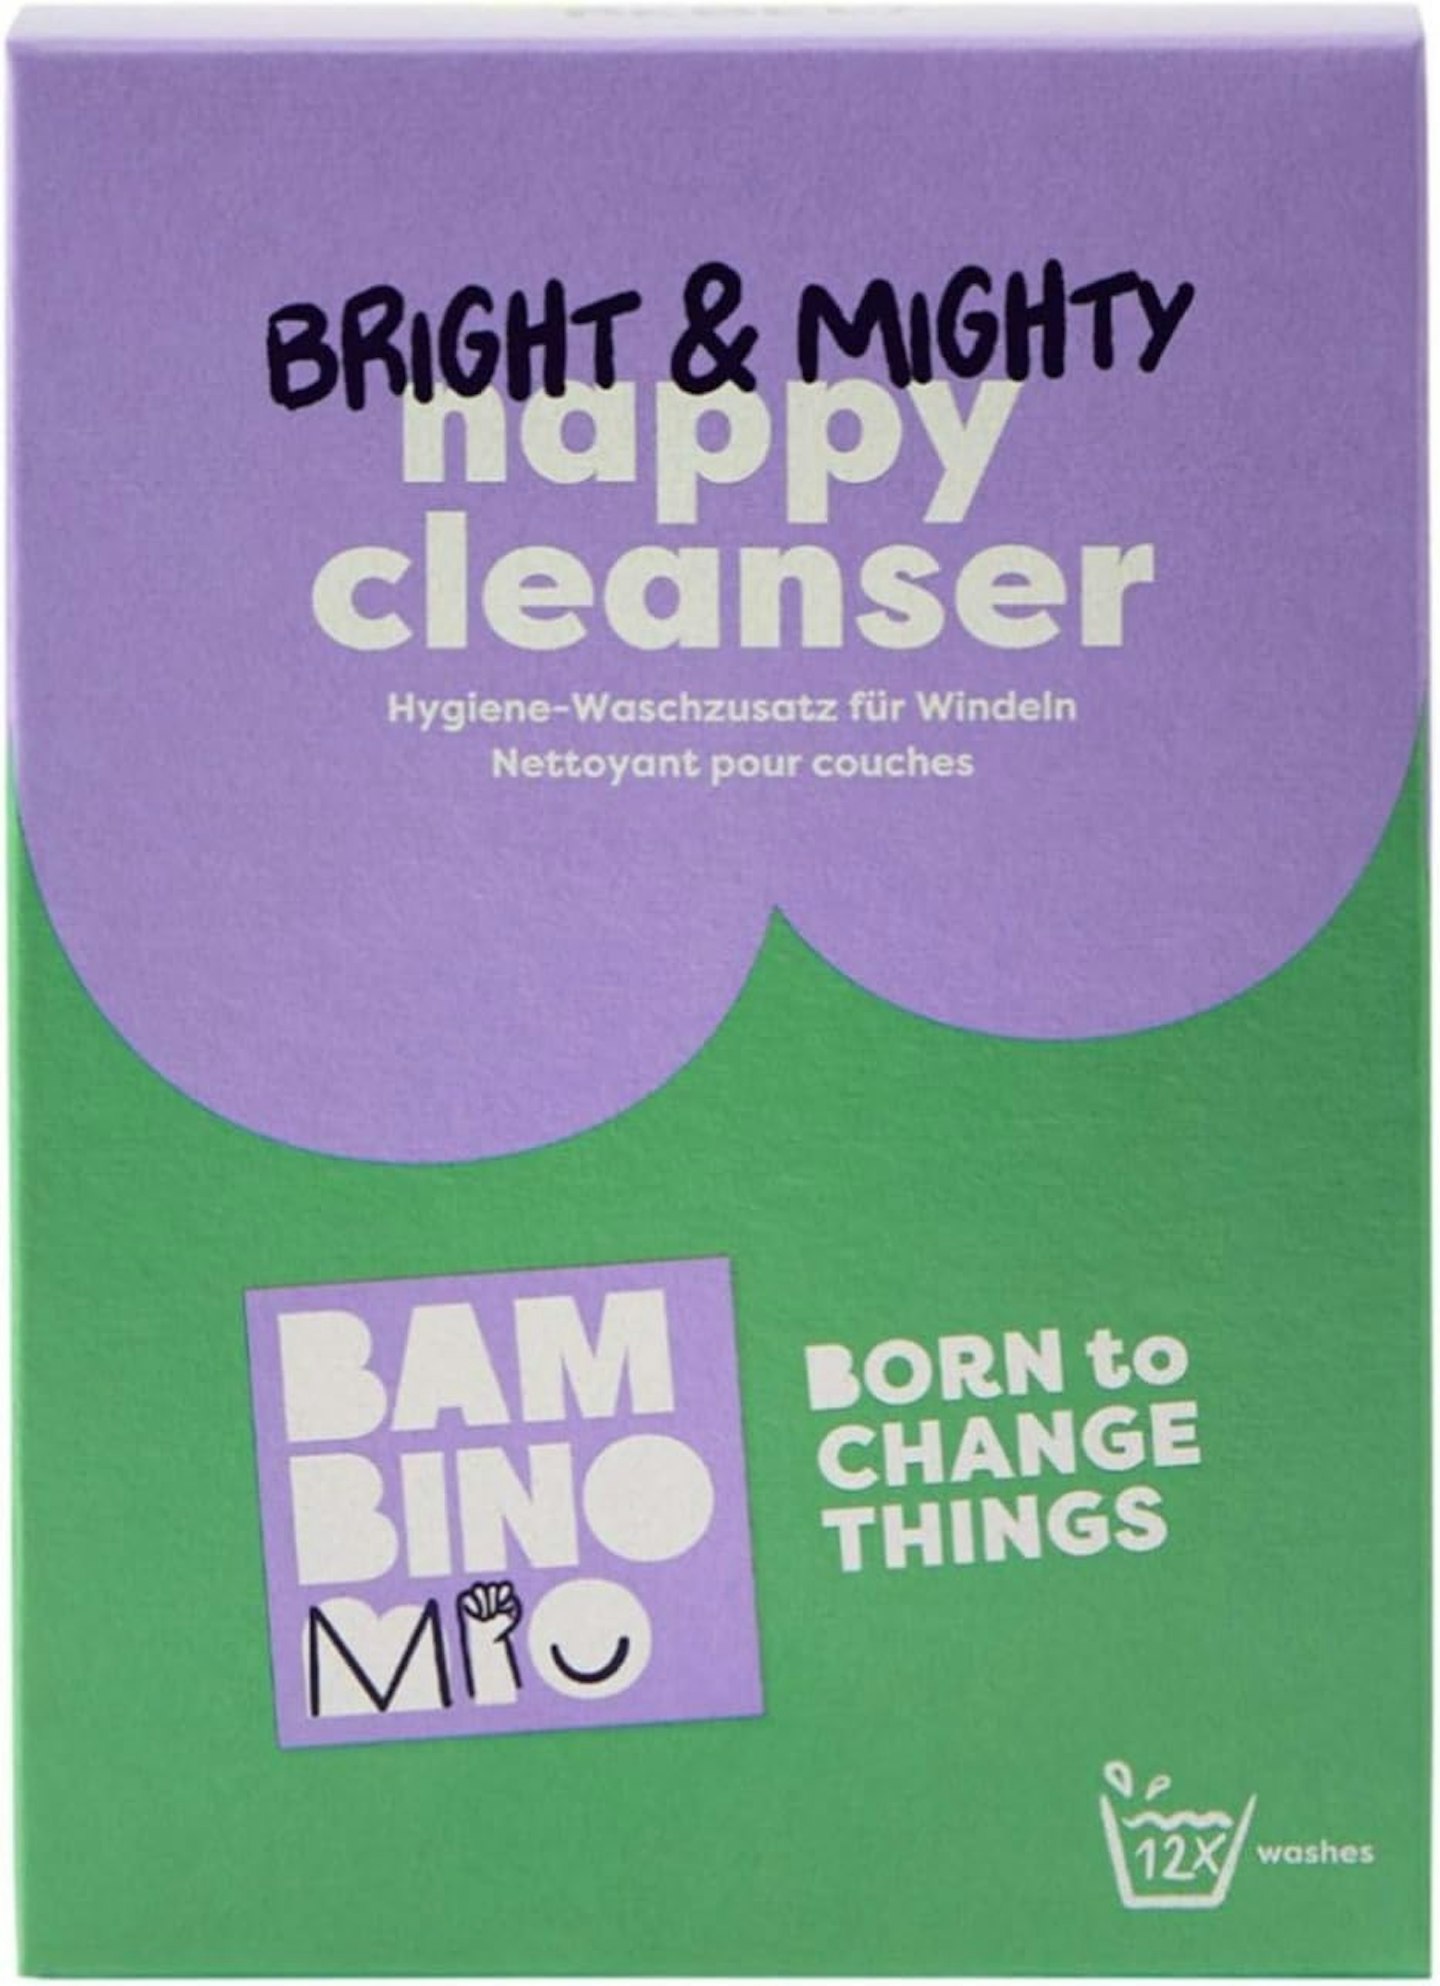 Bambino-Mio washing powder